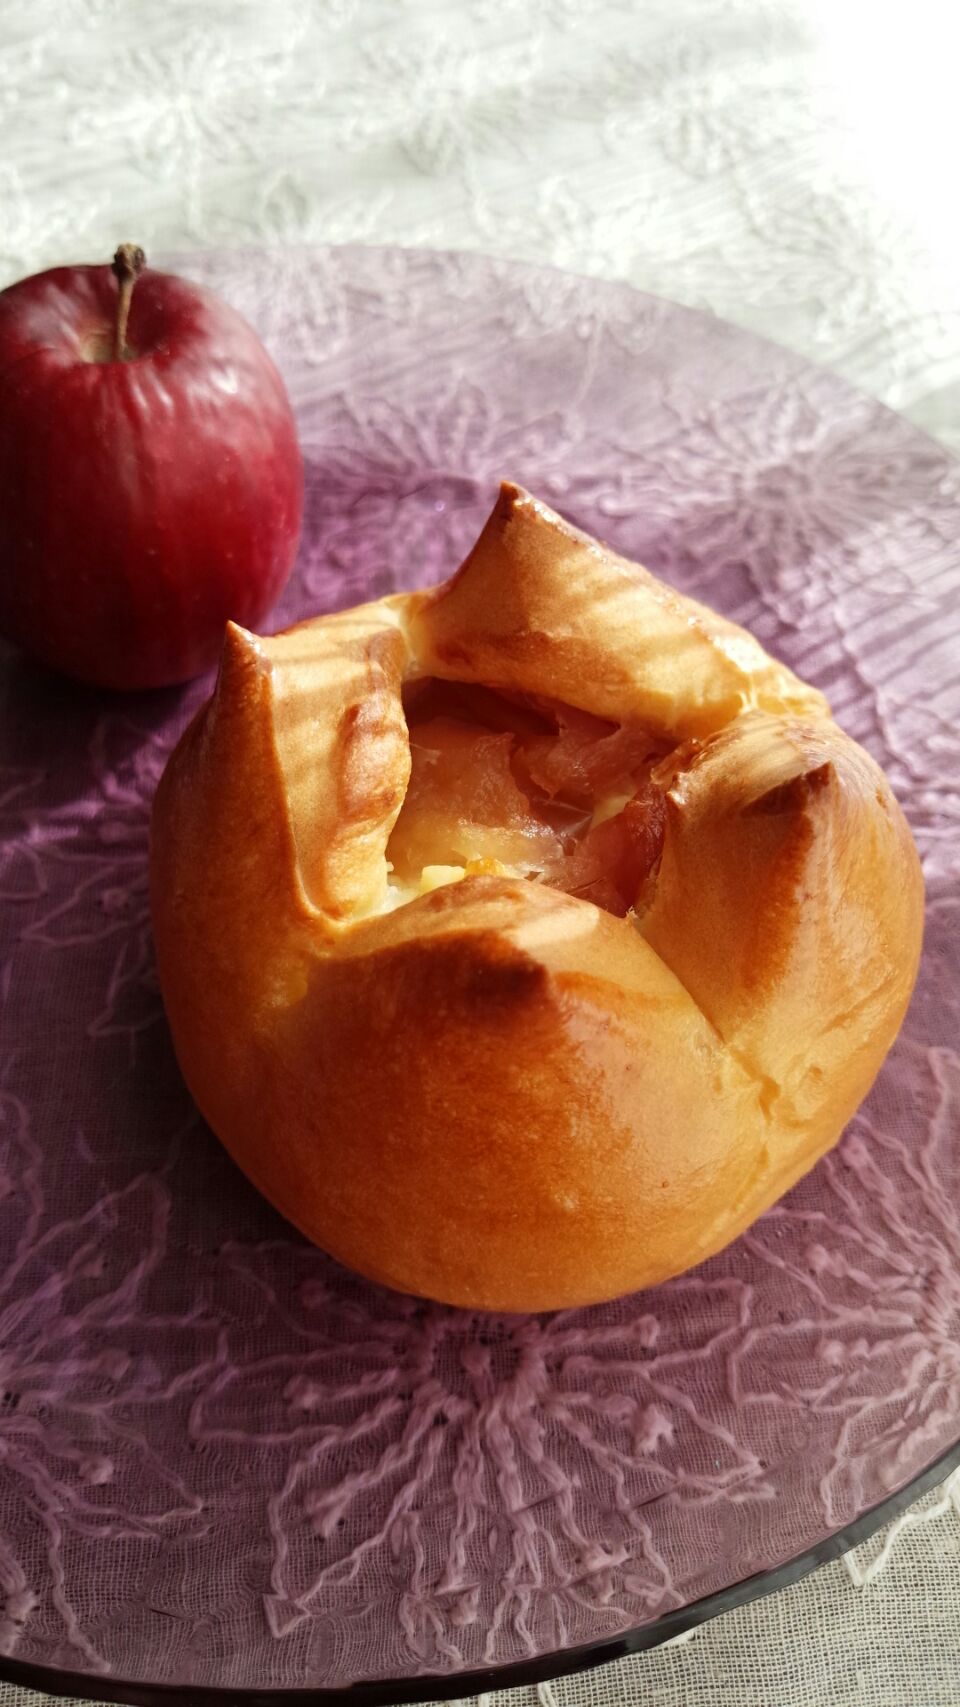 btnonちゃんのセミドライりんごとクリームチーズのパン